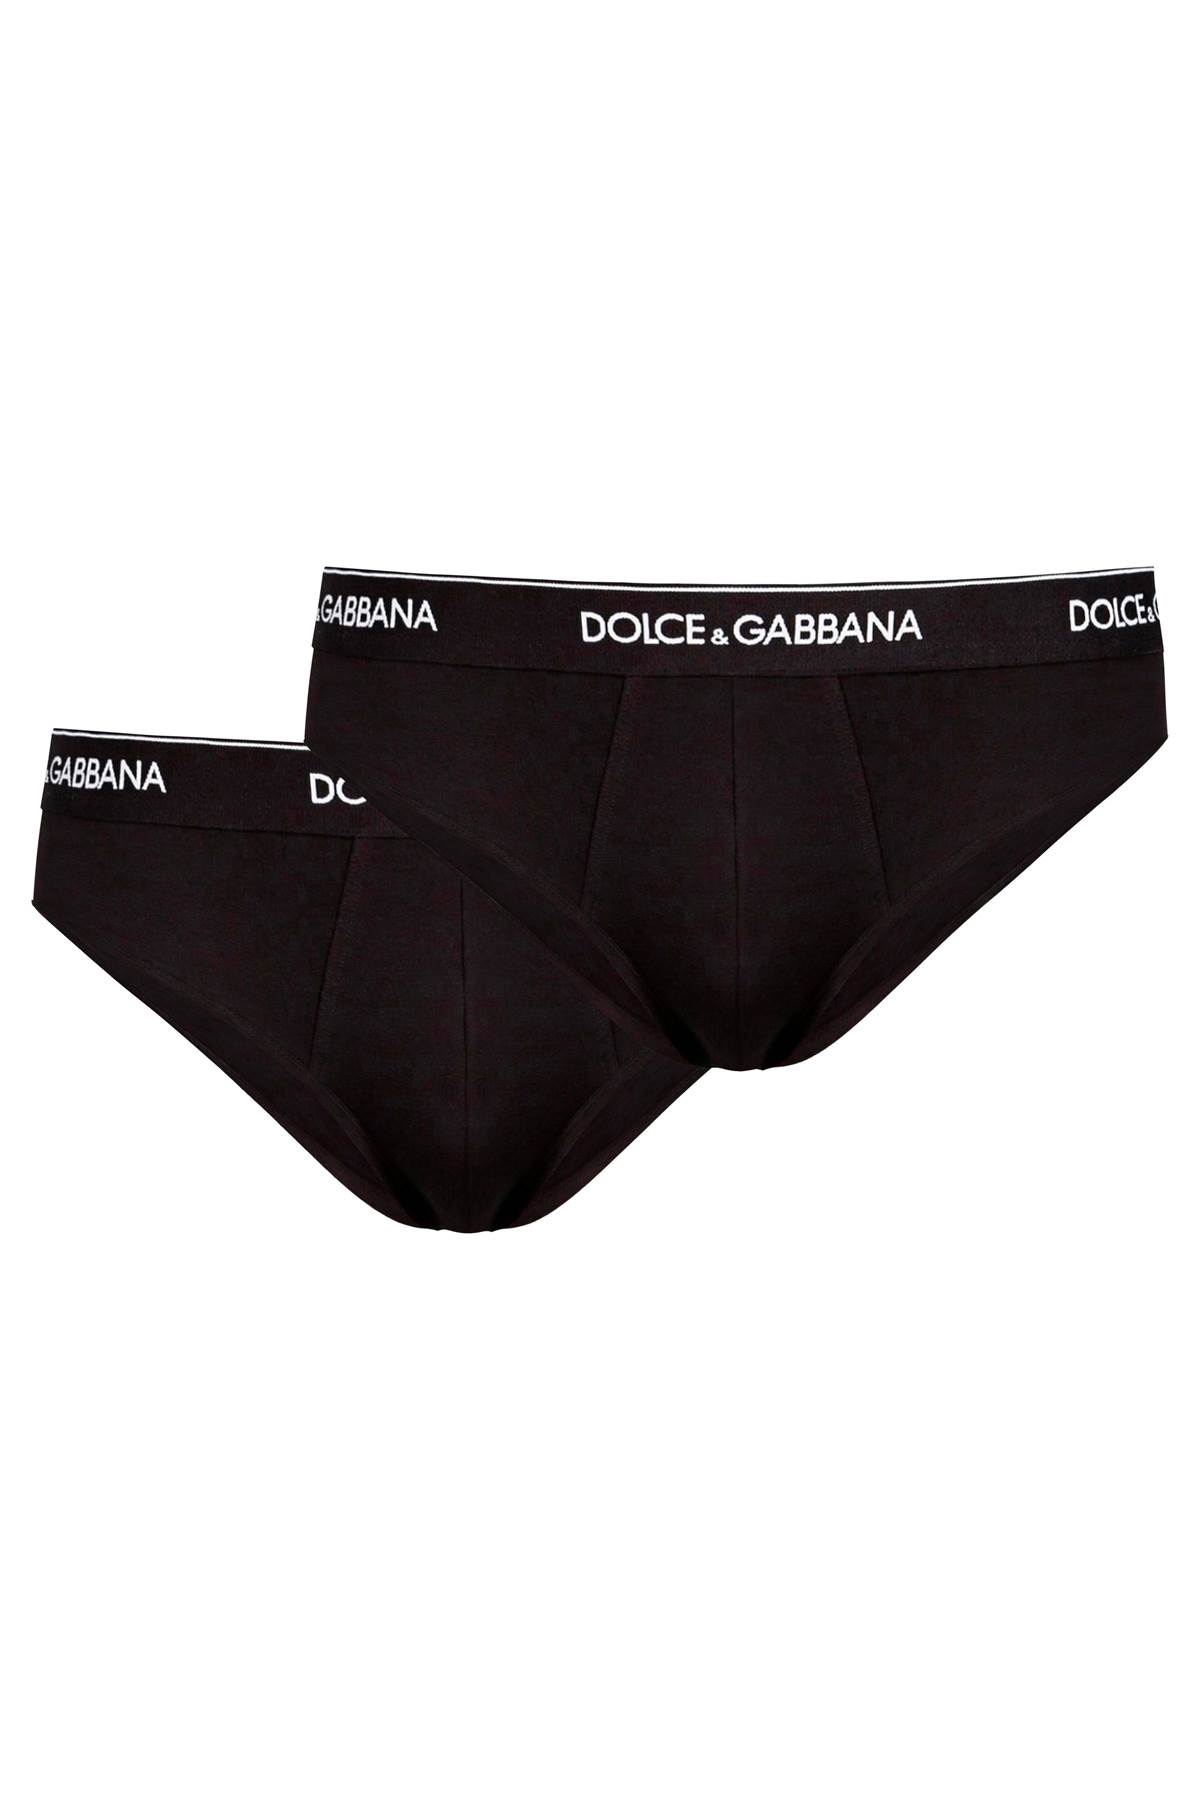 Dolce & Gabbana Underwear Briefs Bi-pack